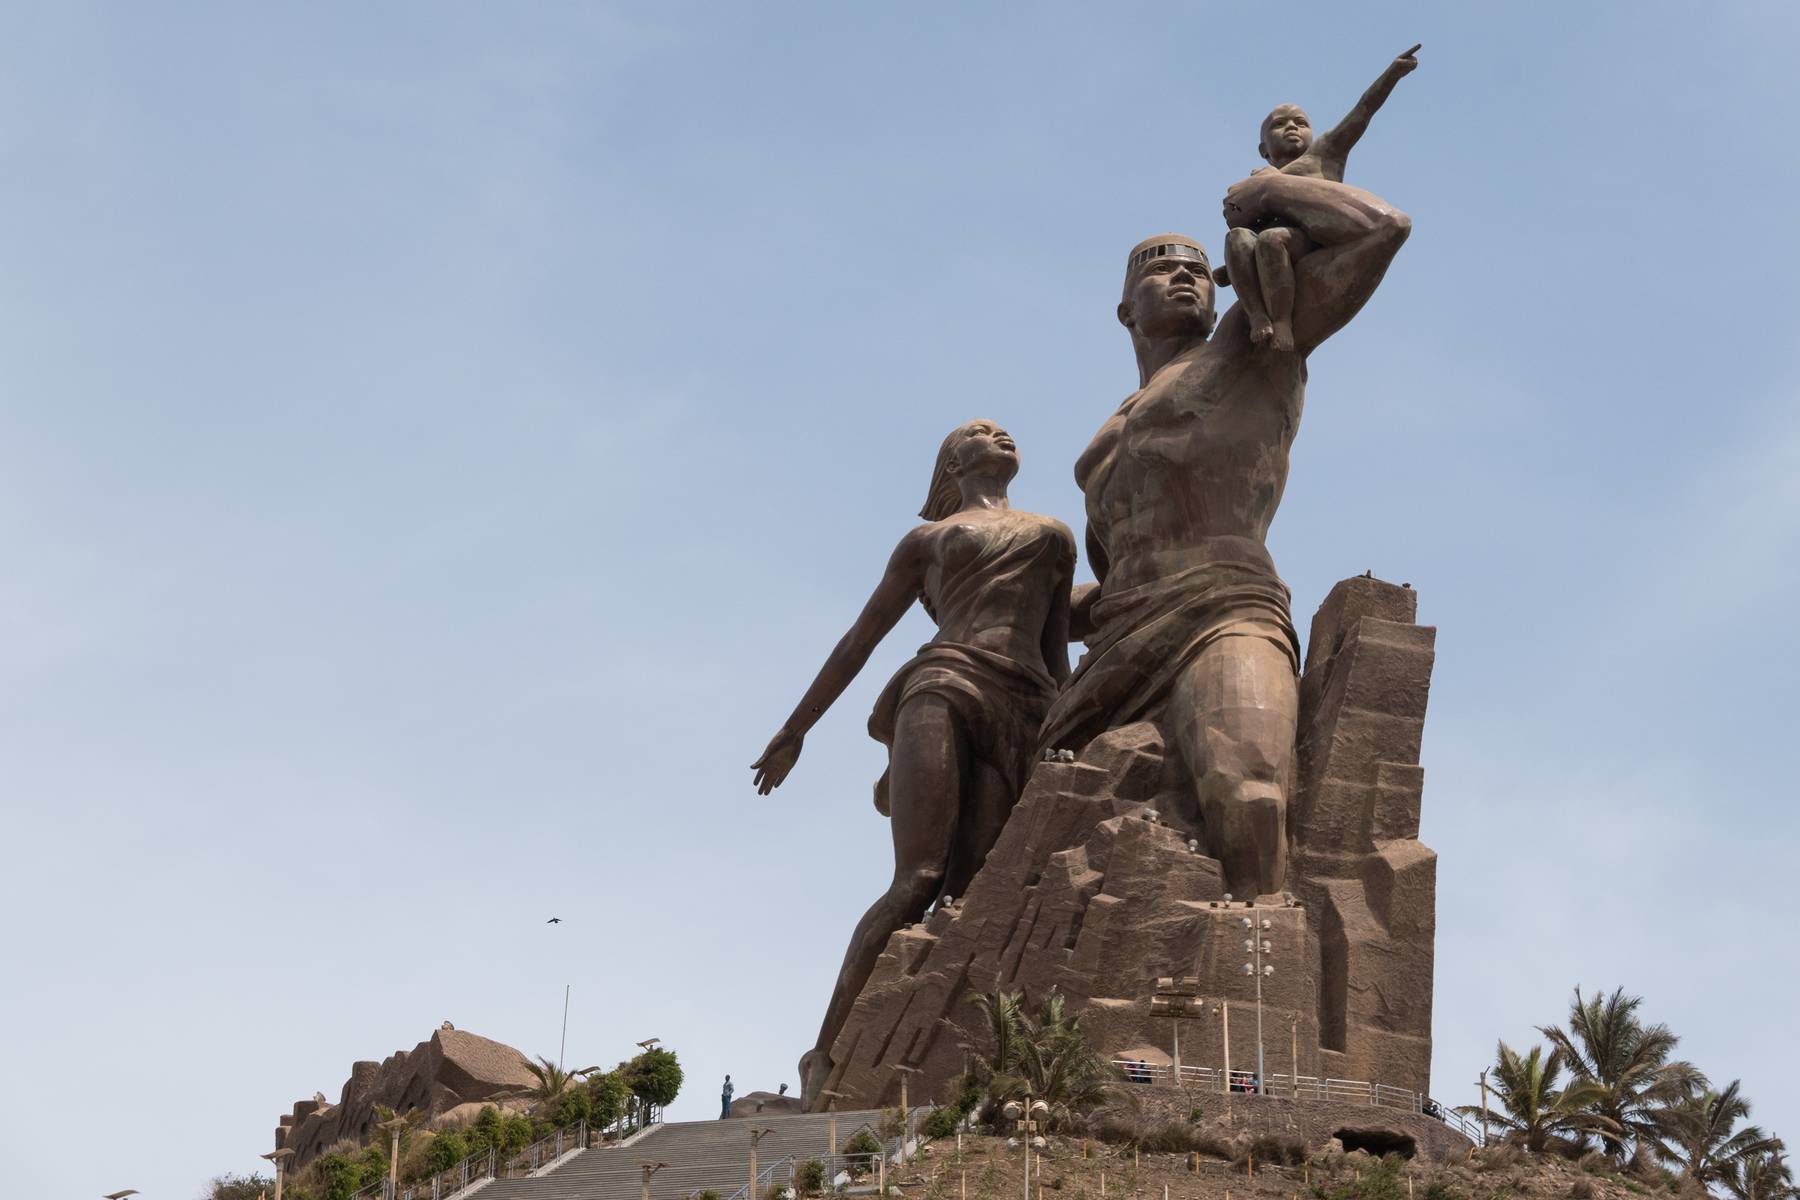 Det jättelika monumentet "Afrikanska Renässansen"